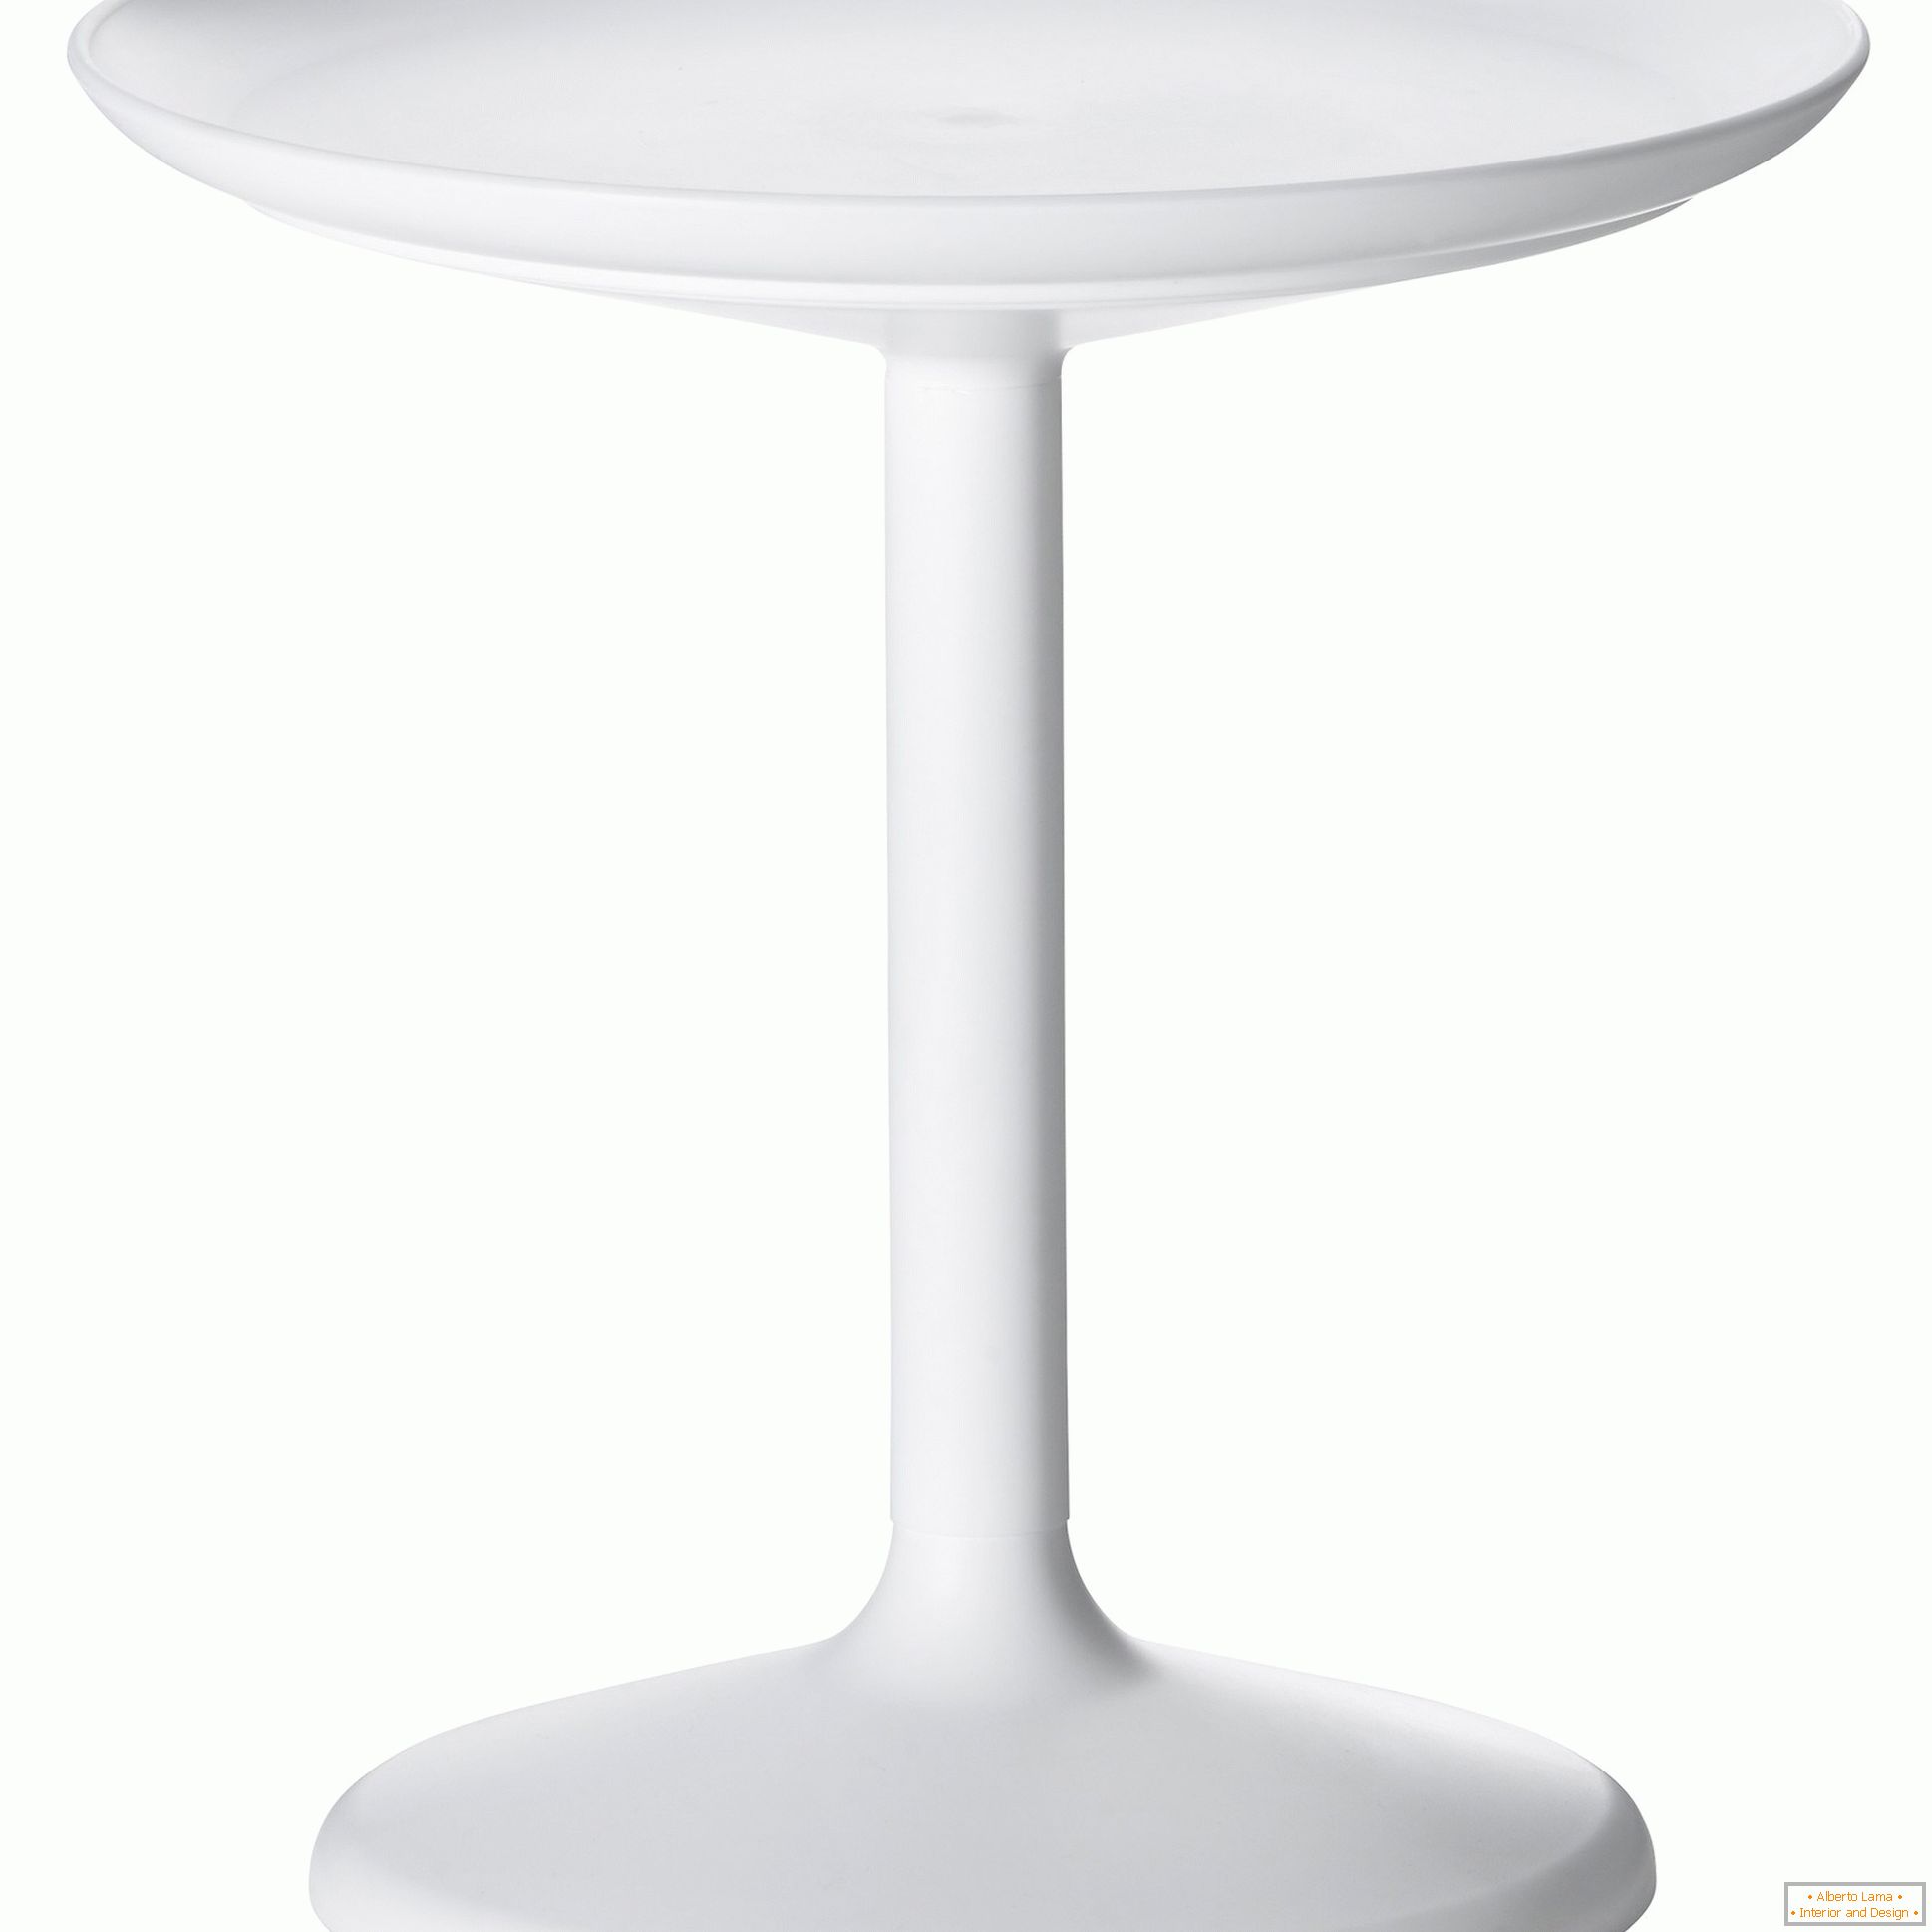 Stôl so širokou a stabilnou základňou